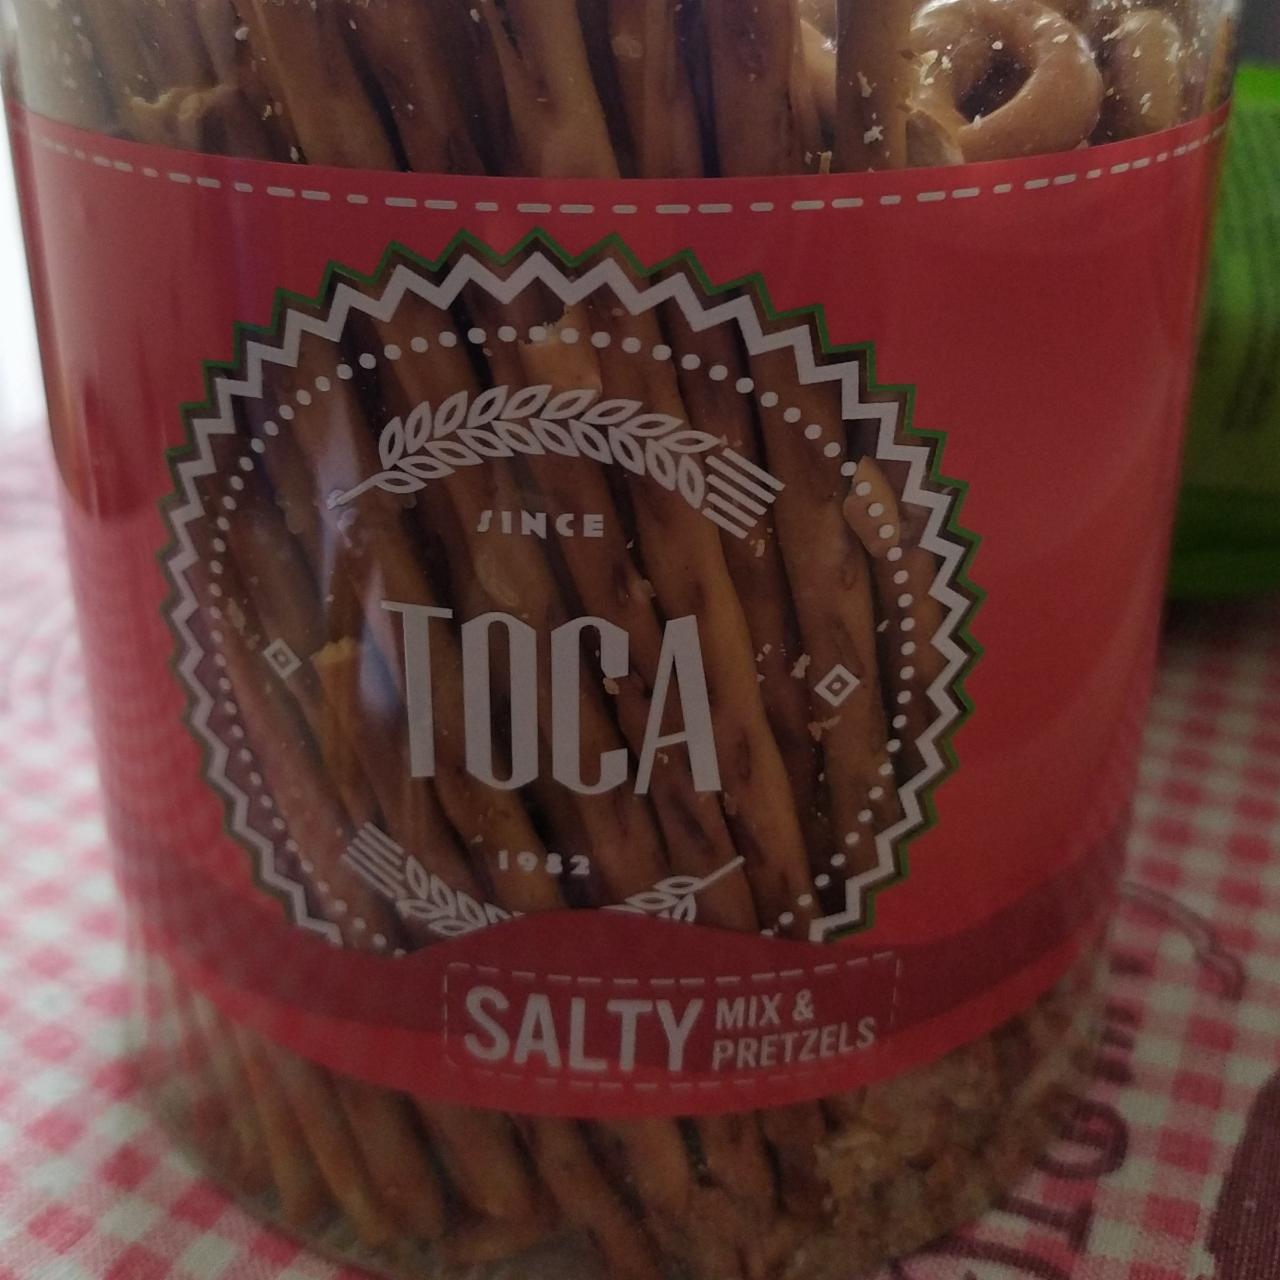 Zdjęcia - Salty mix & pretzels Toca